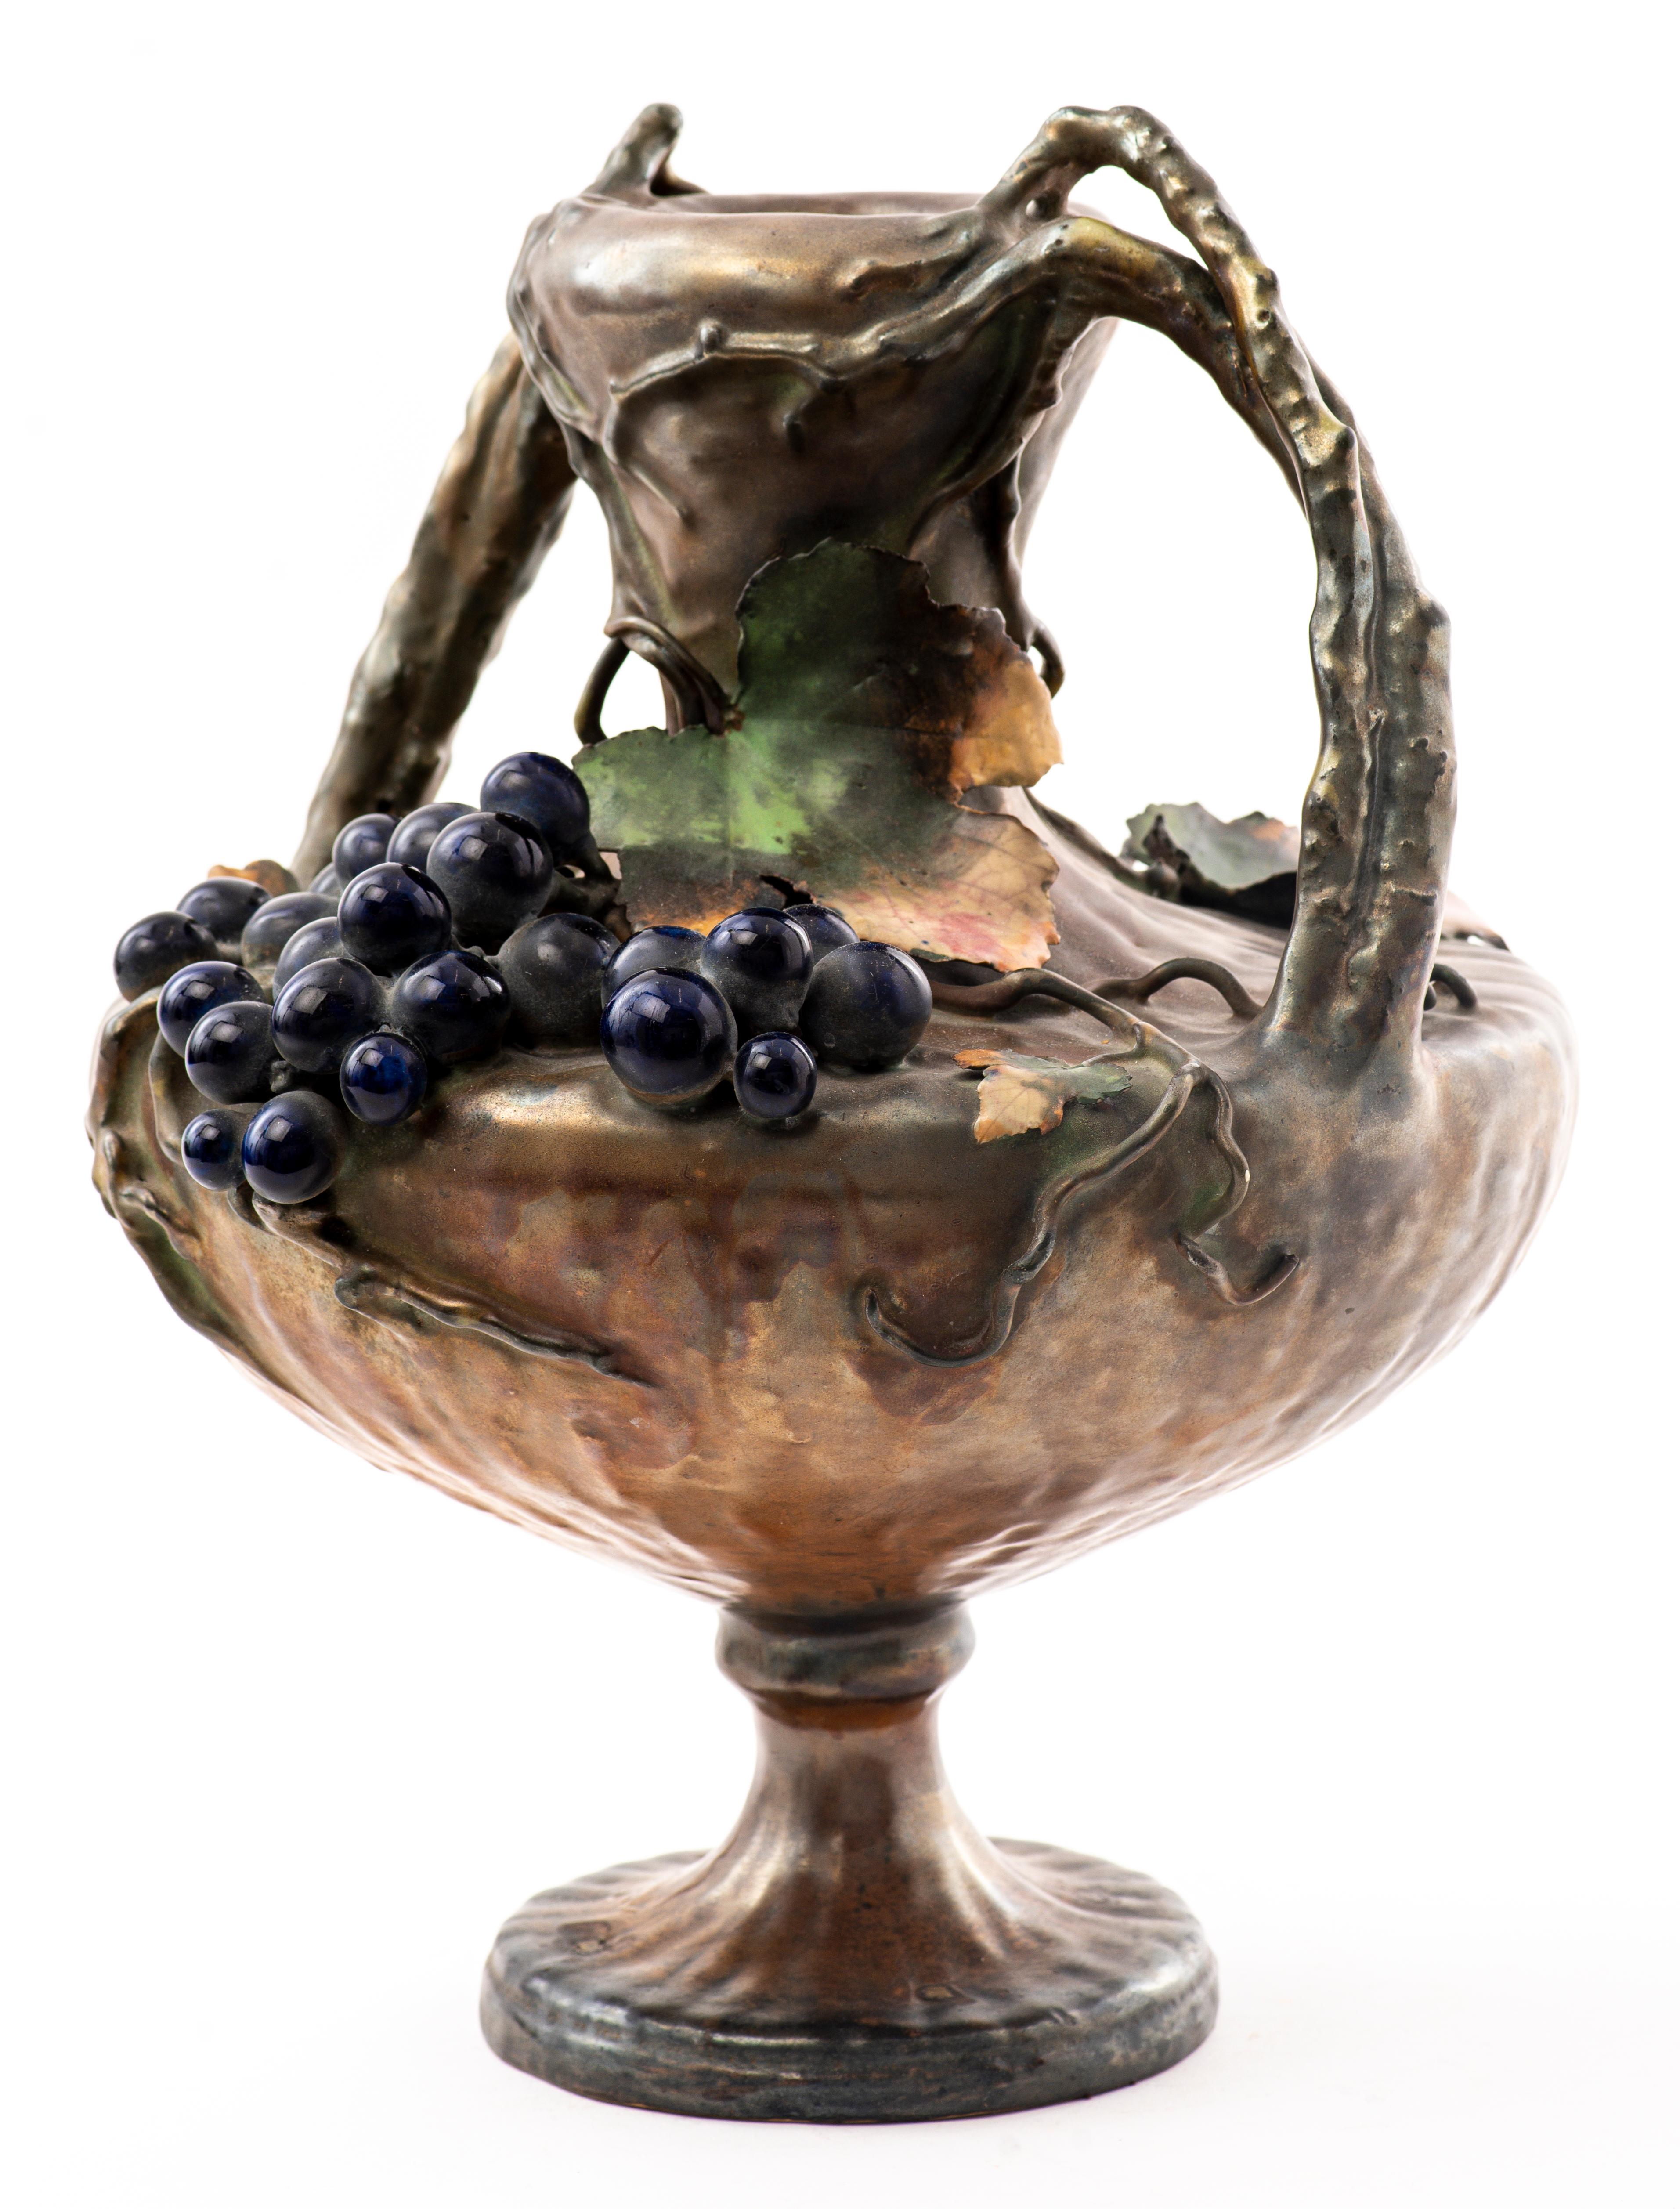 Amphora Vase à deux anses en céramique semi-irisée Art Nouveau autrichien, décoré d'une grappe de raisin suspendue et de vignes et feuilles. Marqué et numéroté en bas.
Dimensions : 14